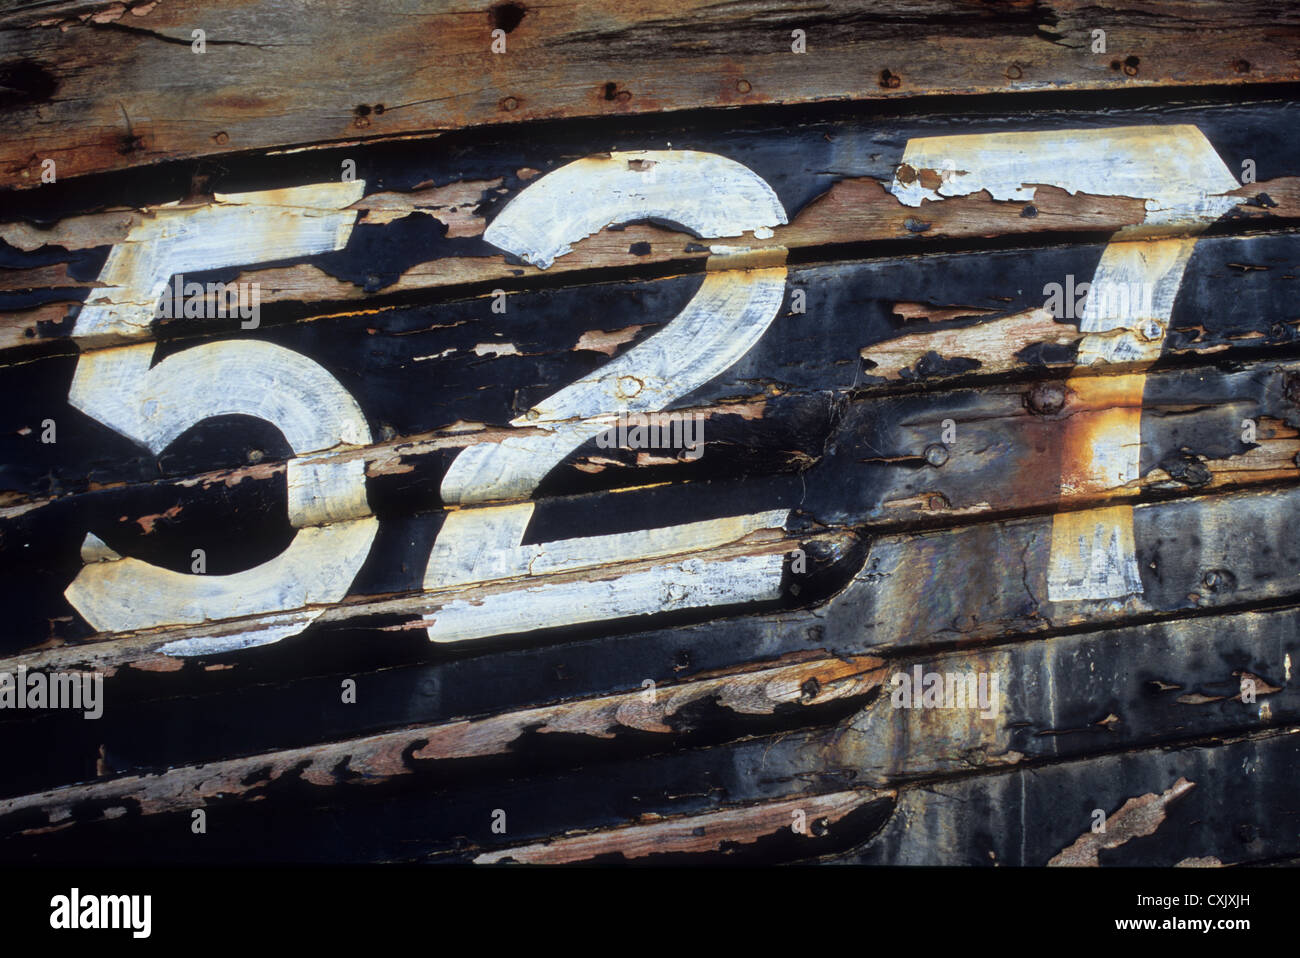 Dettaglio del lato della barca di legno con sfald vernice nera e numeri 527 verniciato in bianco Foto Stock